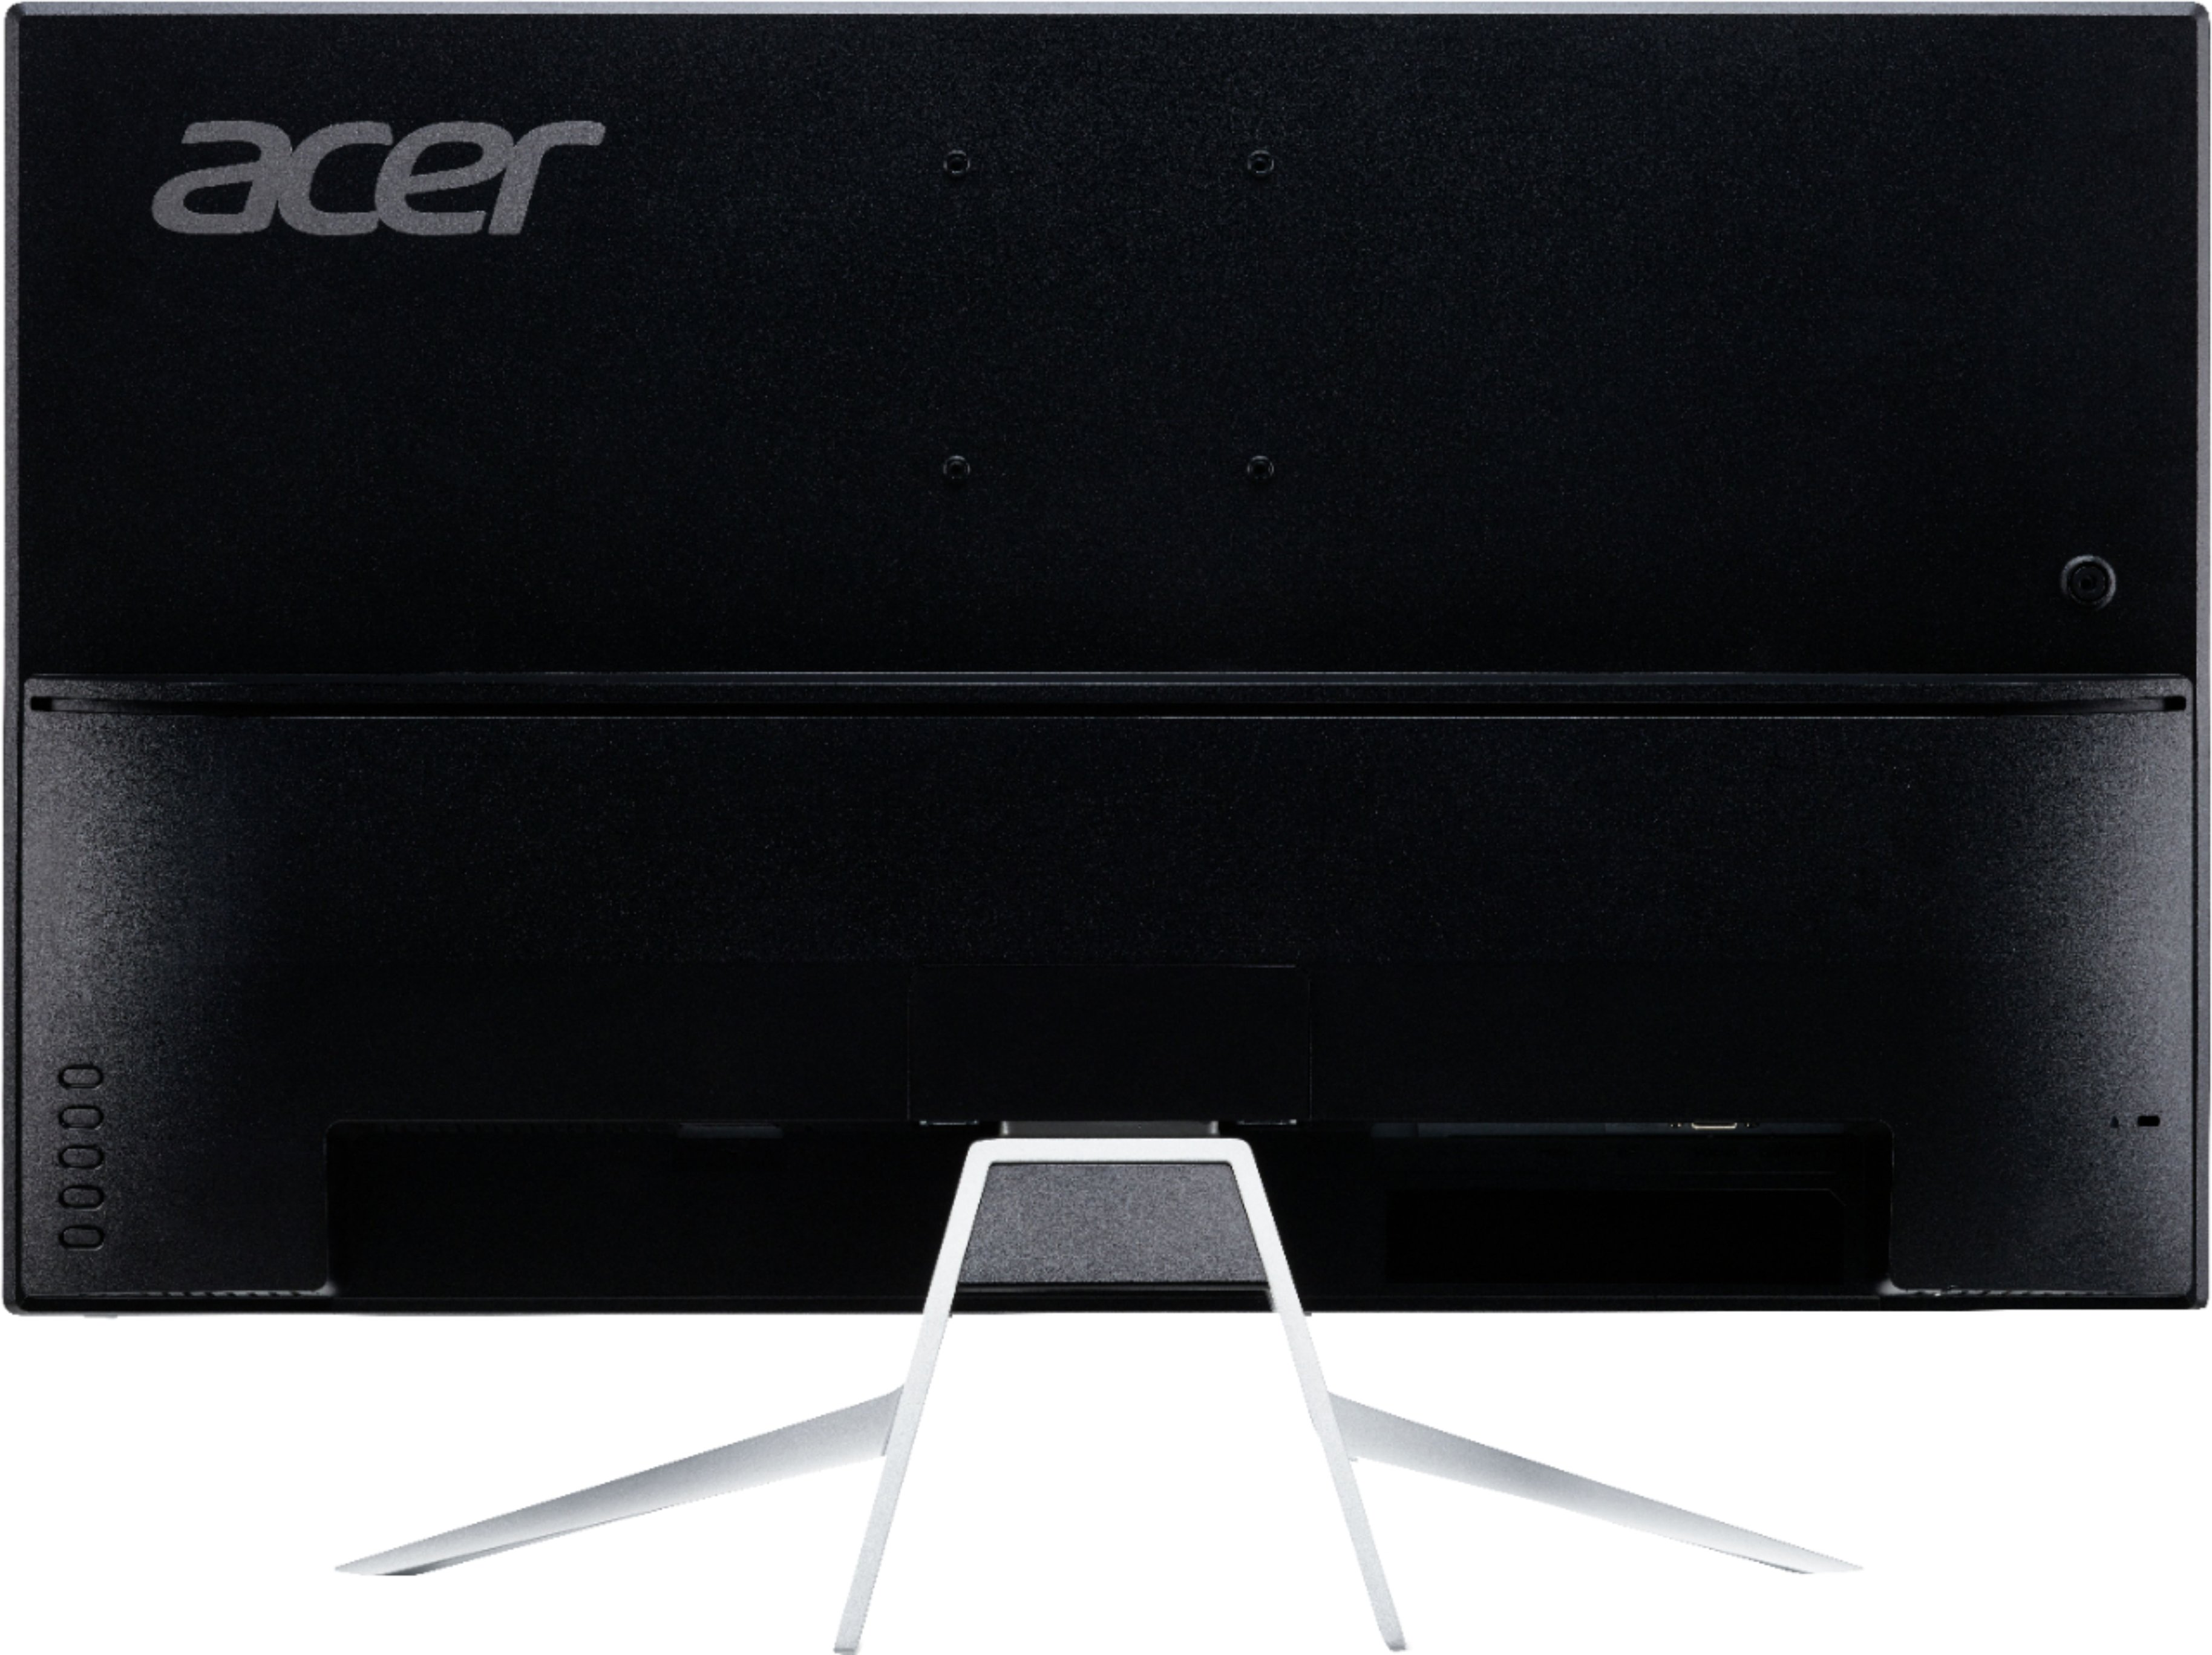 Acer Et322qu on Sale, 53% OFF | www.emanagreen.com